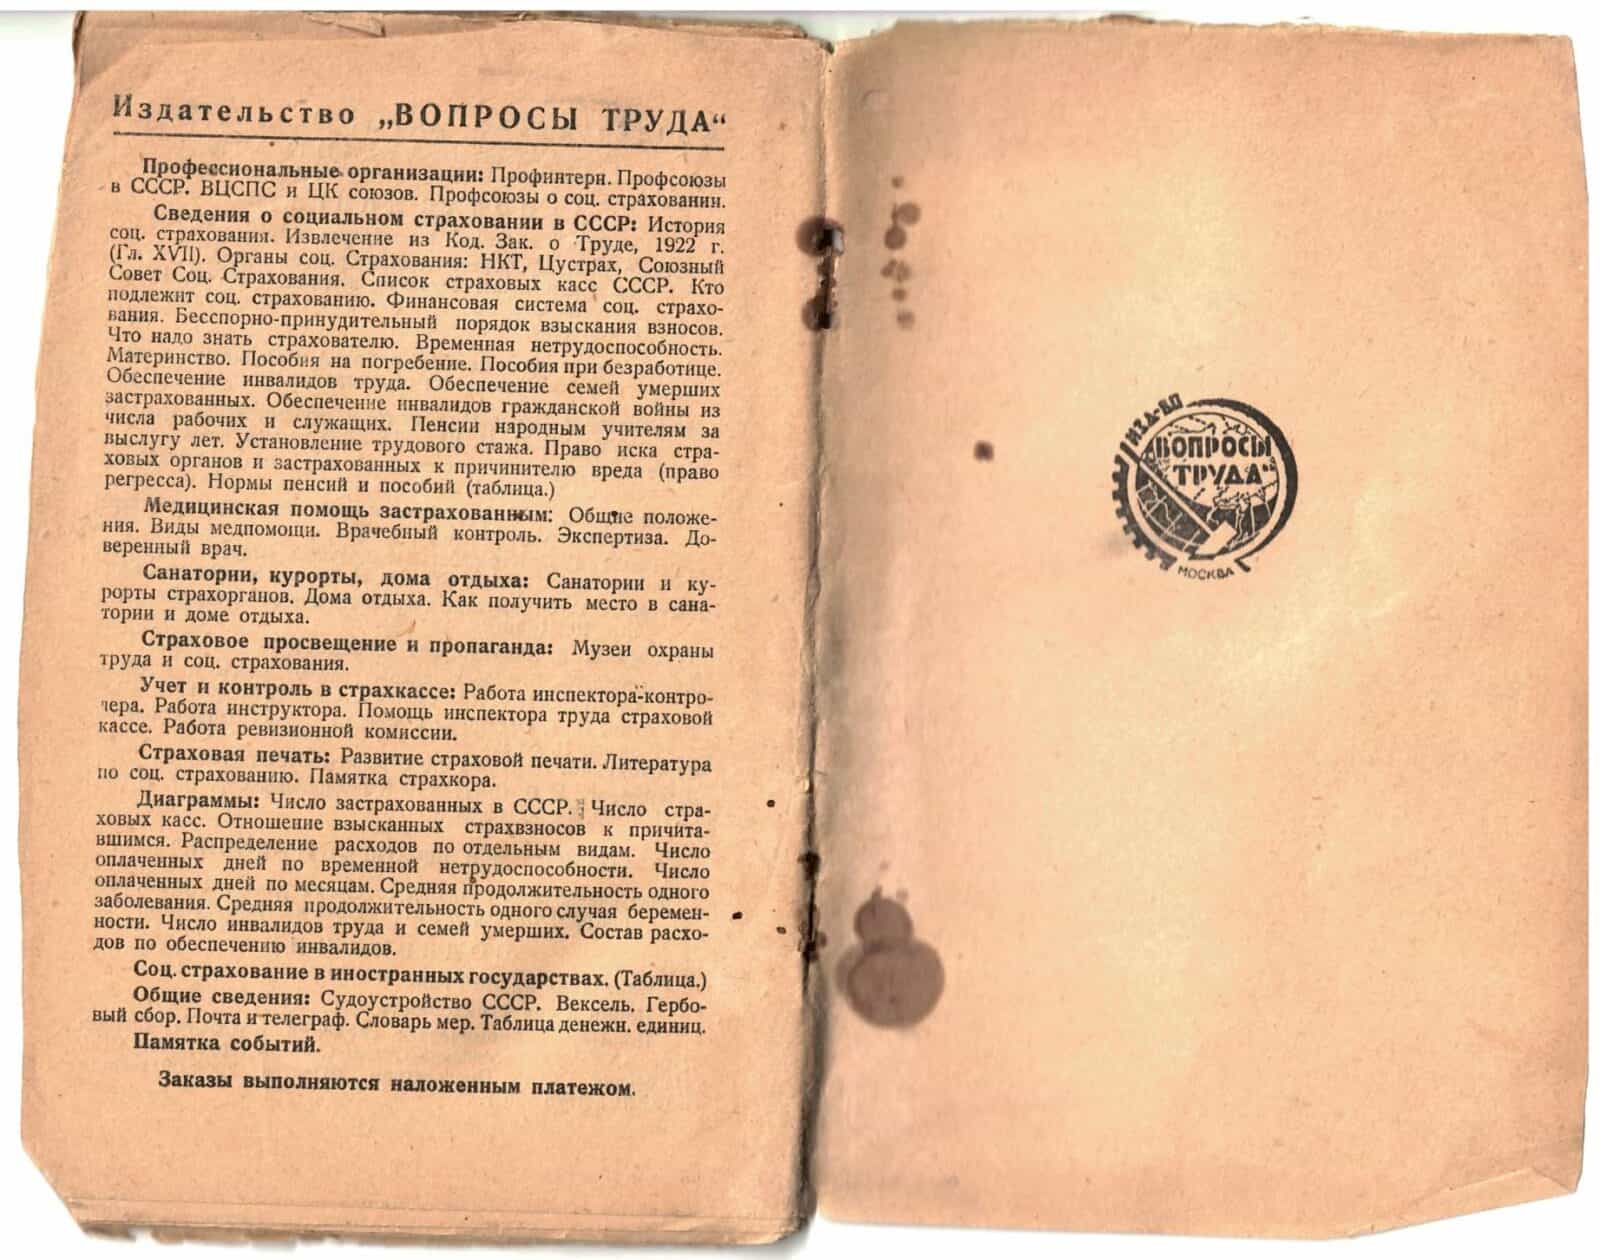 Кодекс о труде 1922 года. Издательство вопросы труда. Ордены а.а. Вишневского.